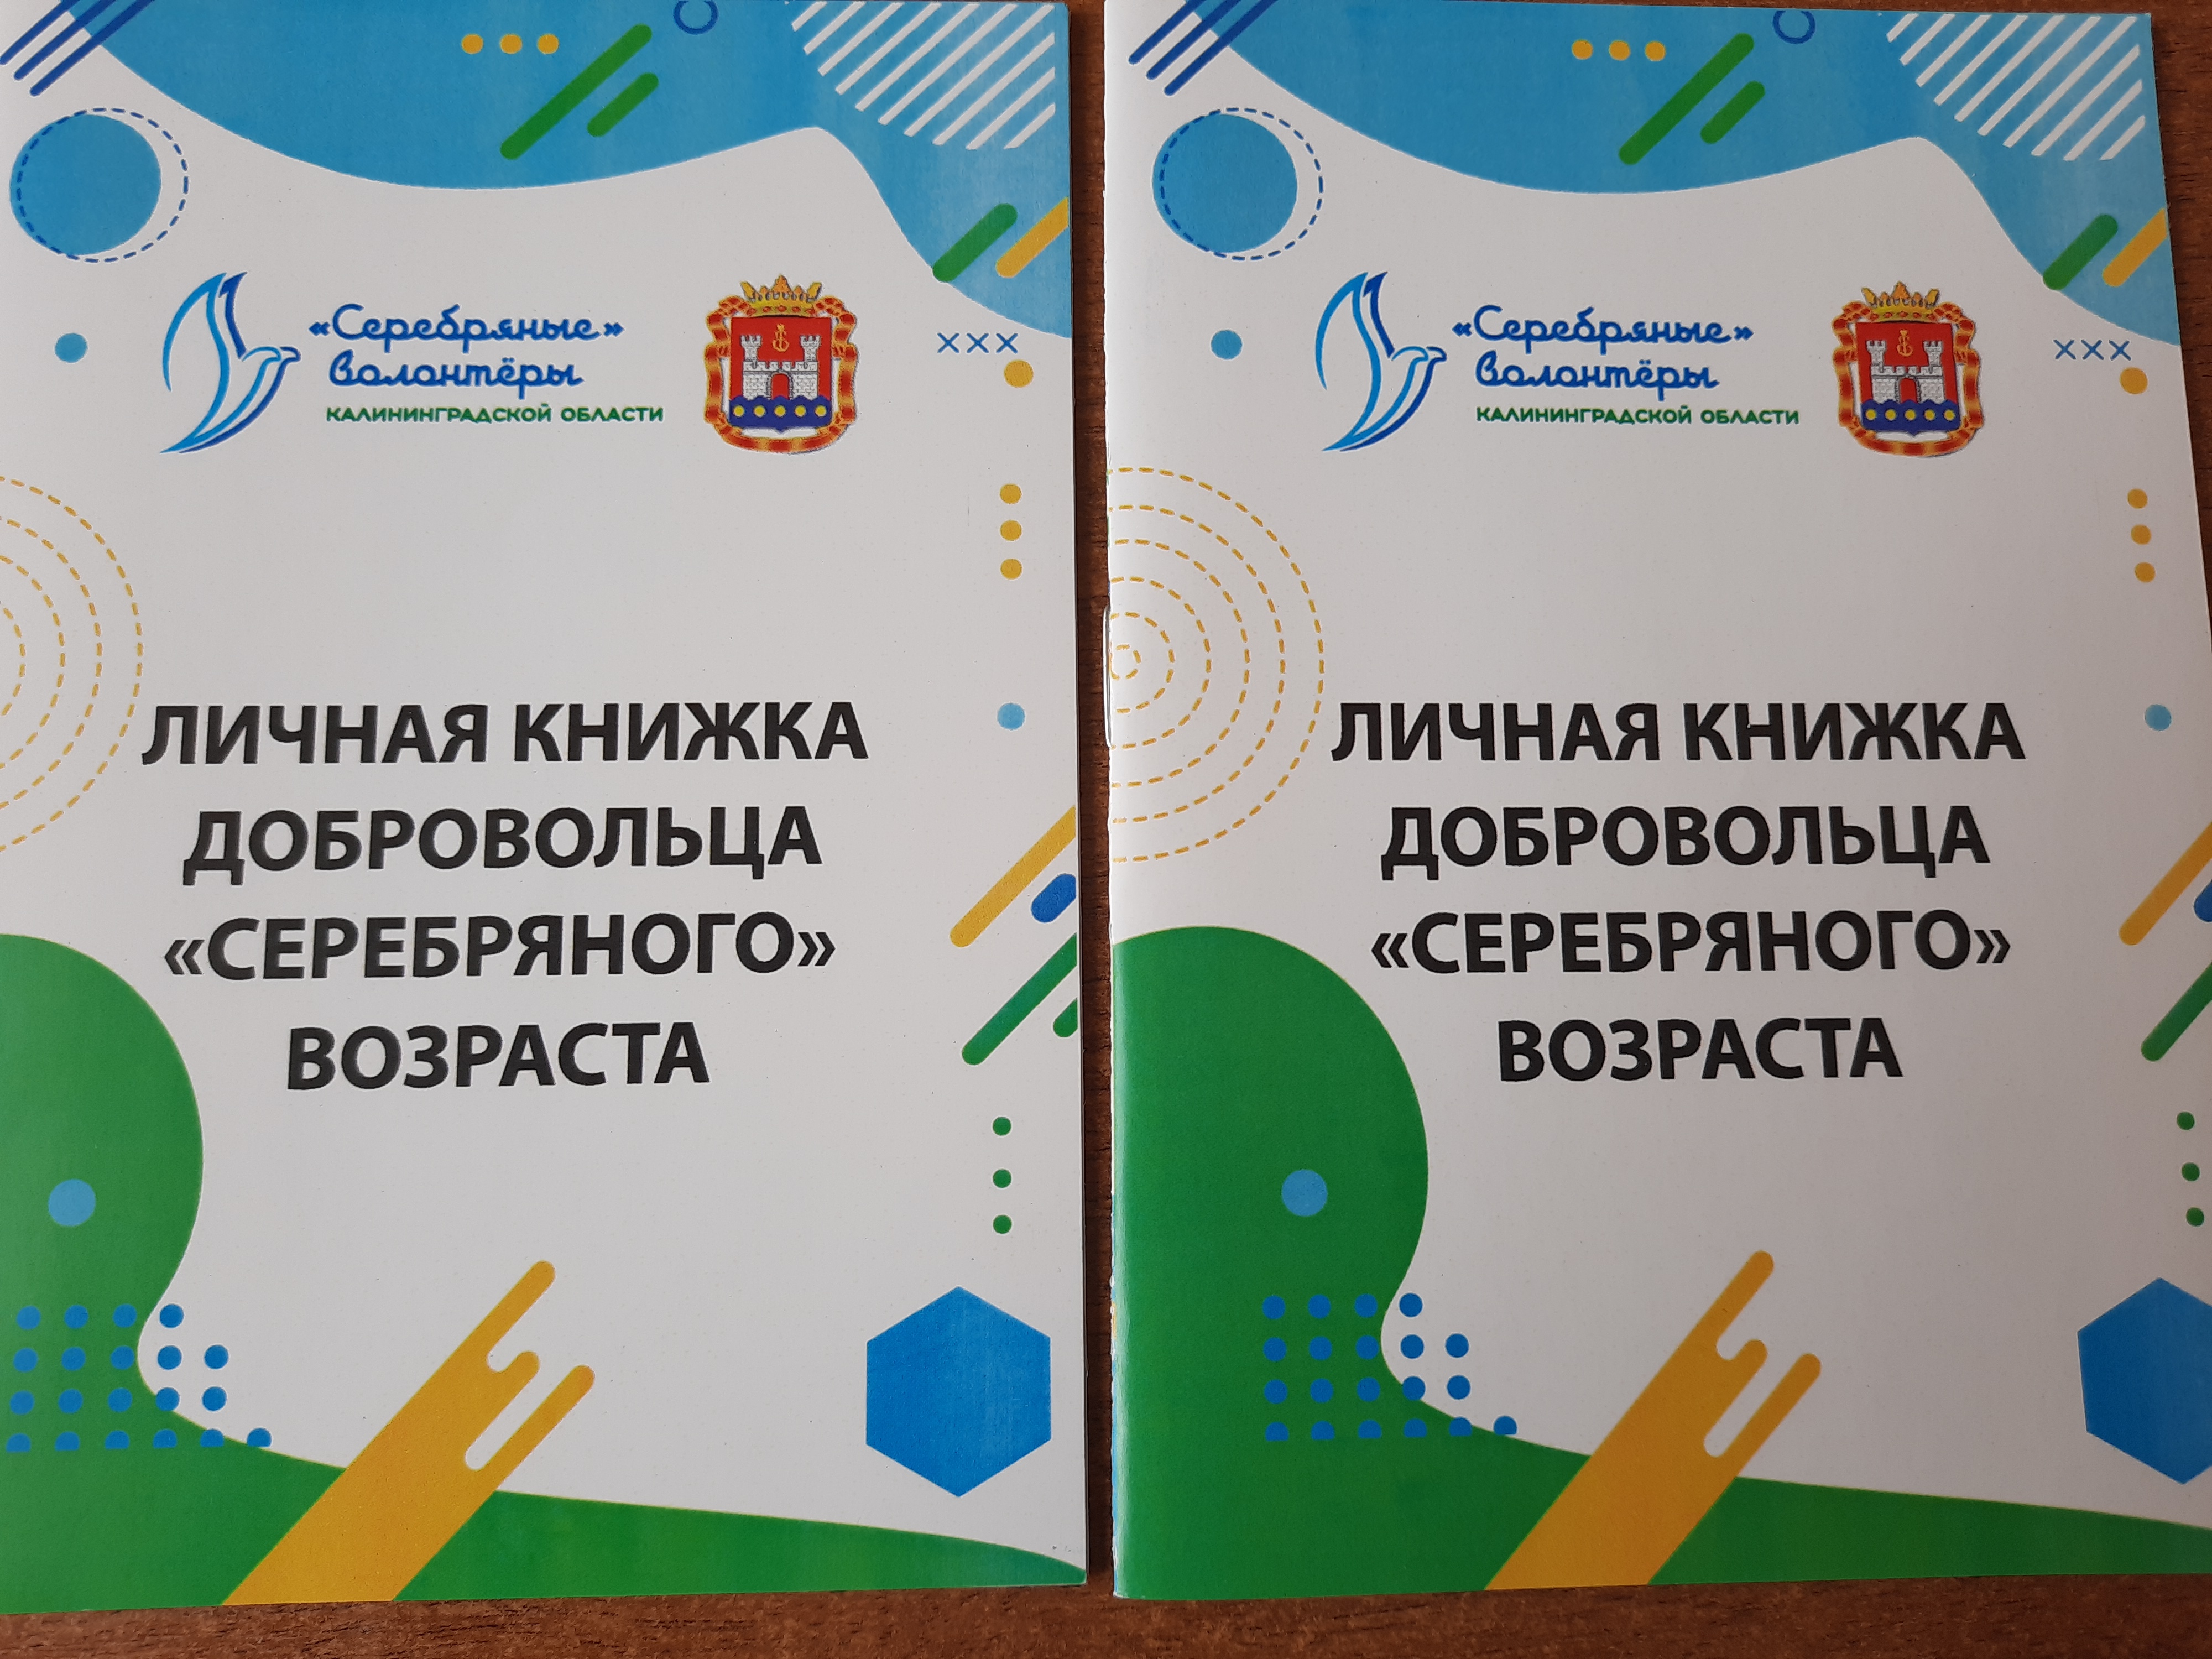 Центр «серебряного» волонтерства  в Зеленоградске объединил 35 неравнодушных горожан и приглашает зеленоградцев становиться волонтерами